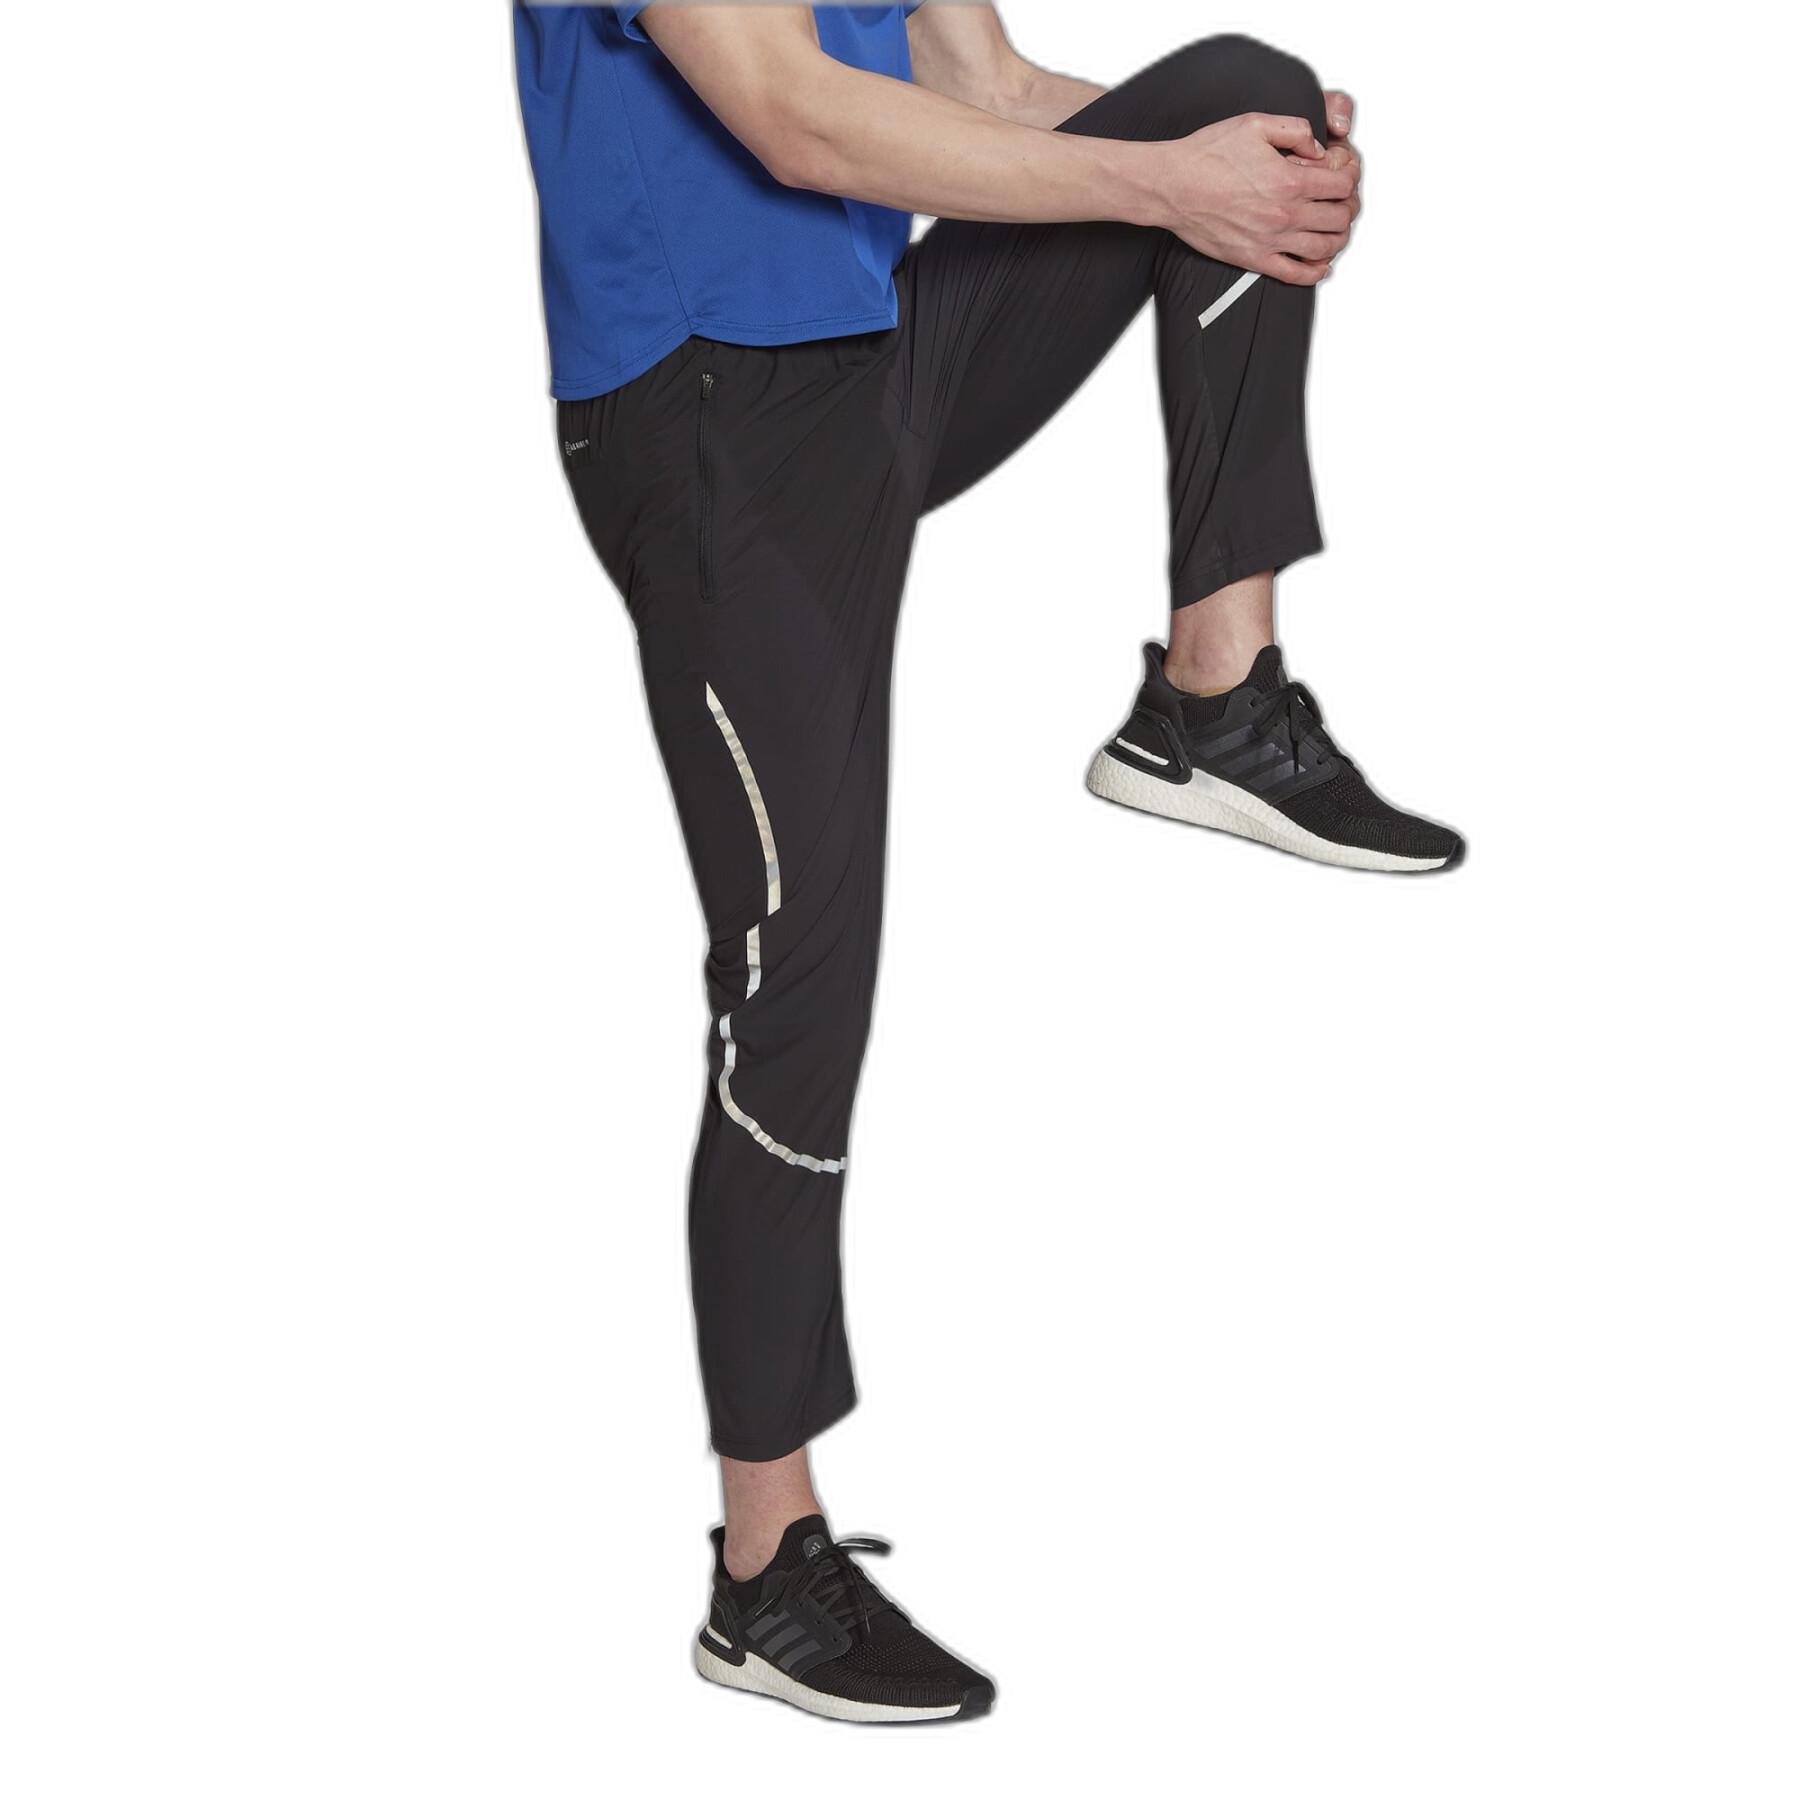 Pantalón de jogging adidas Adizero